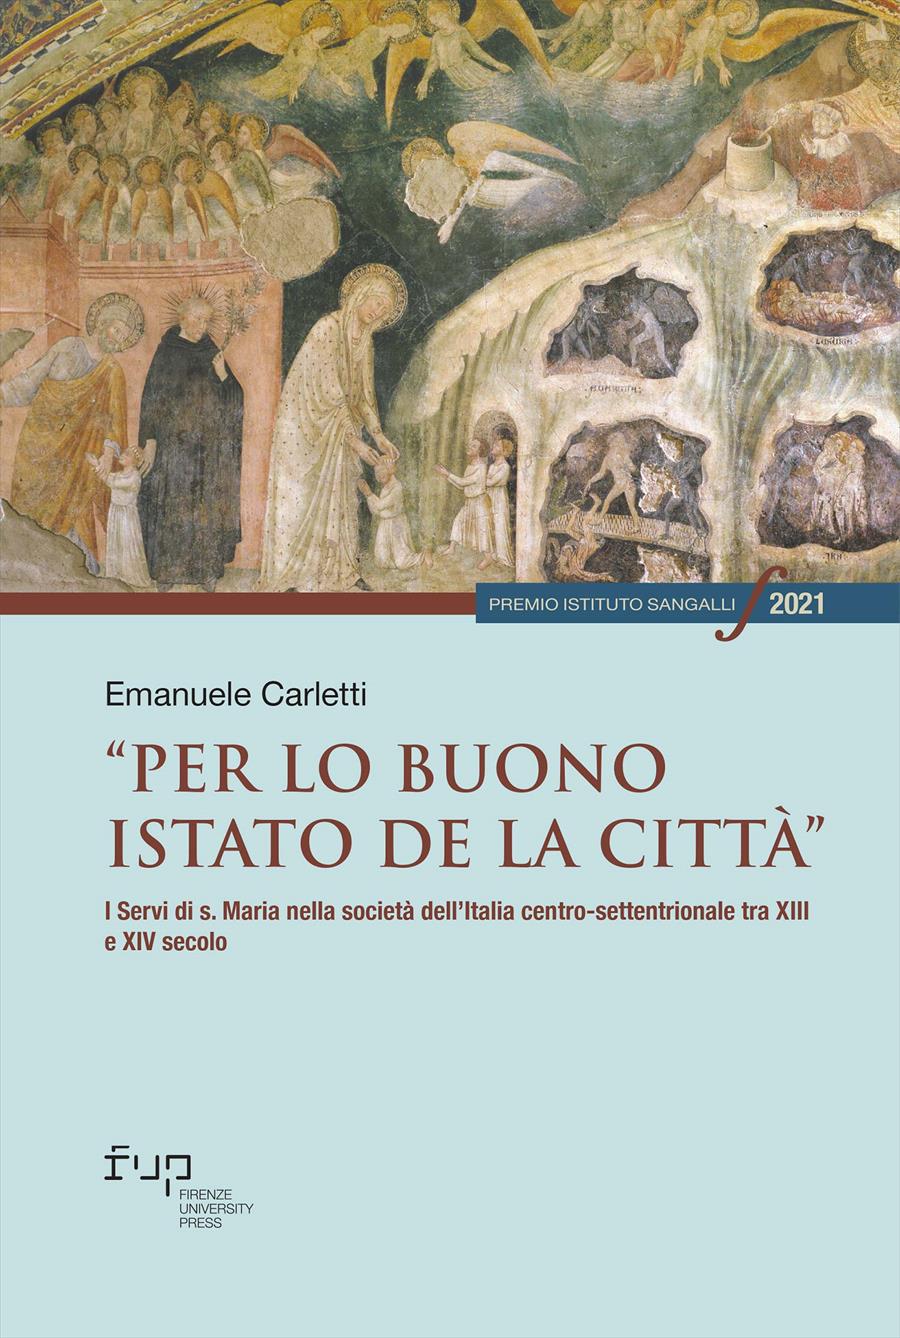 Storia del fascismo. Vol. 3 - Roberto Mancini - Libro Pagine 2021, I libri  del Borghese